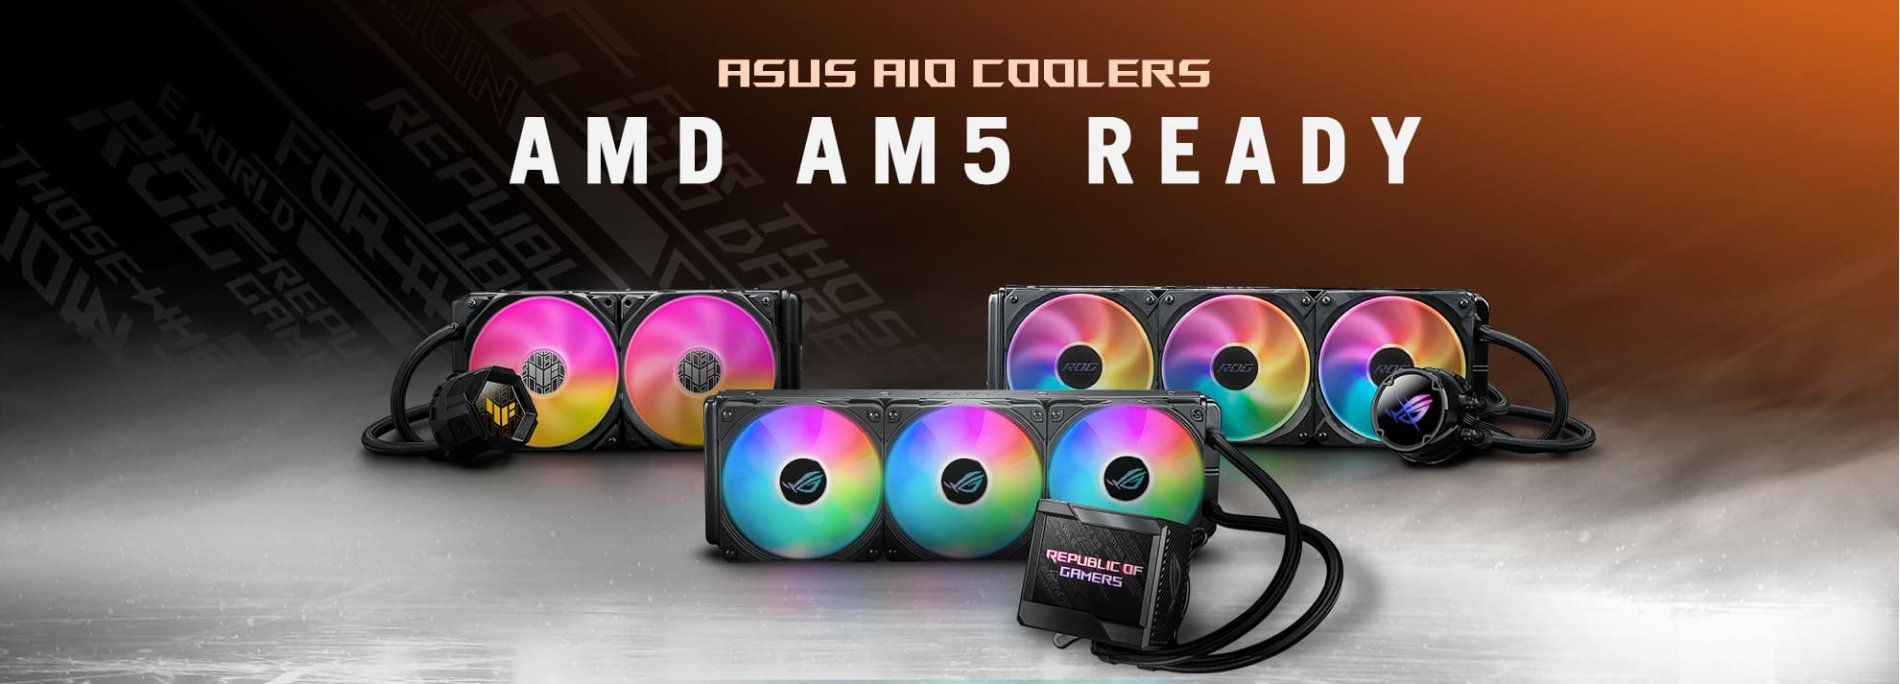 ASUS пропонує безкоштовний монтажний комплект AMD Retention Kit власникам своєї продукції.